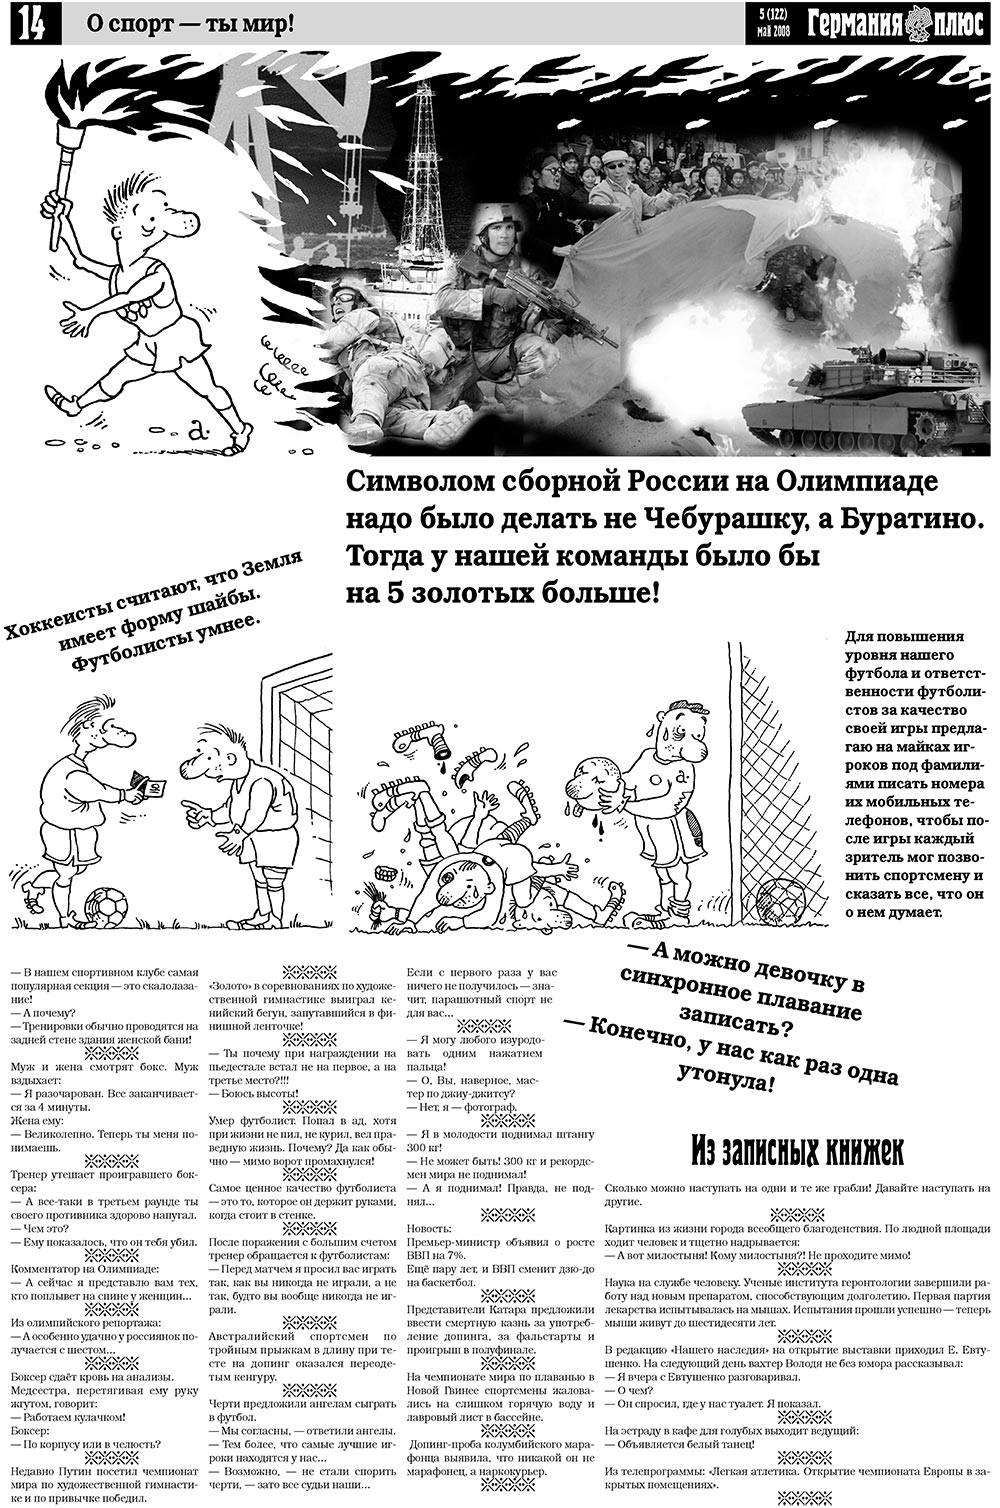 Германия плюс, газета. 2008 №5 стр.18